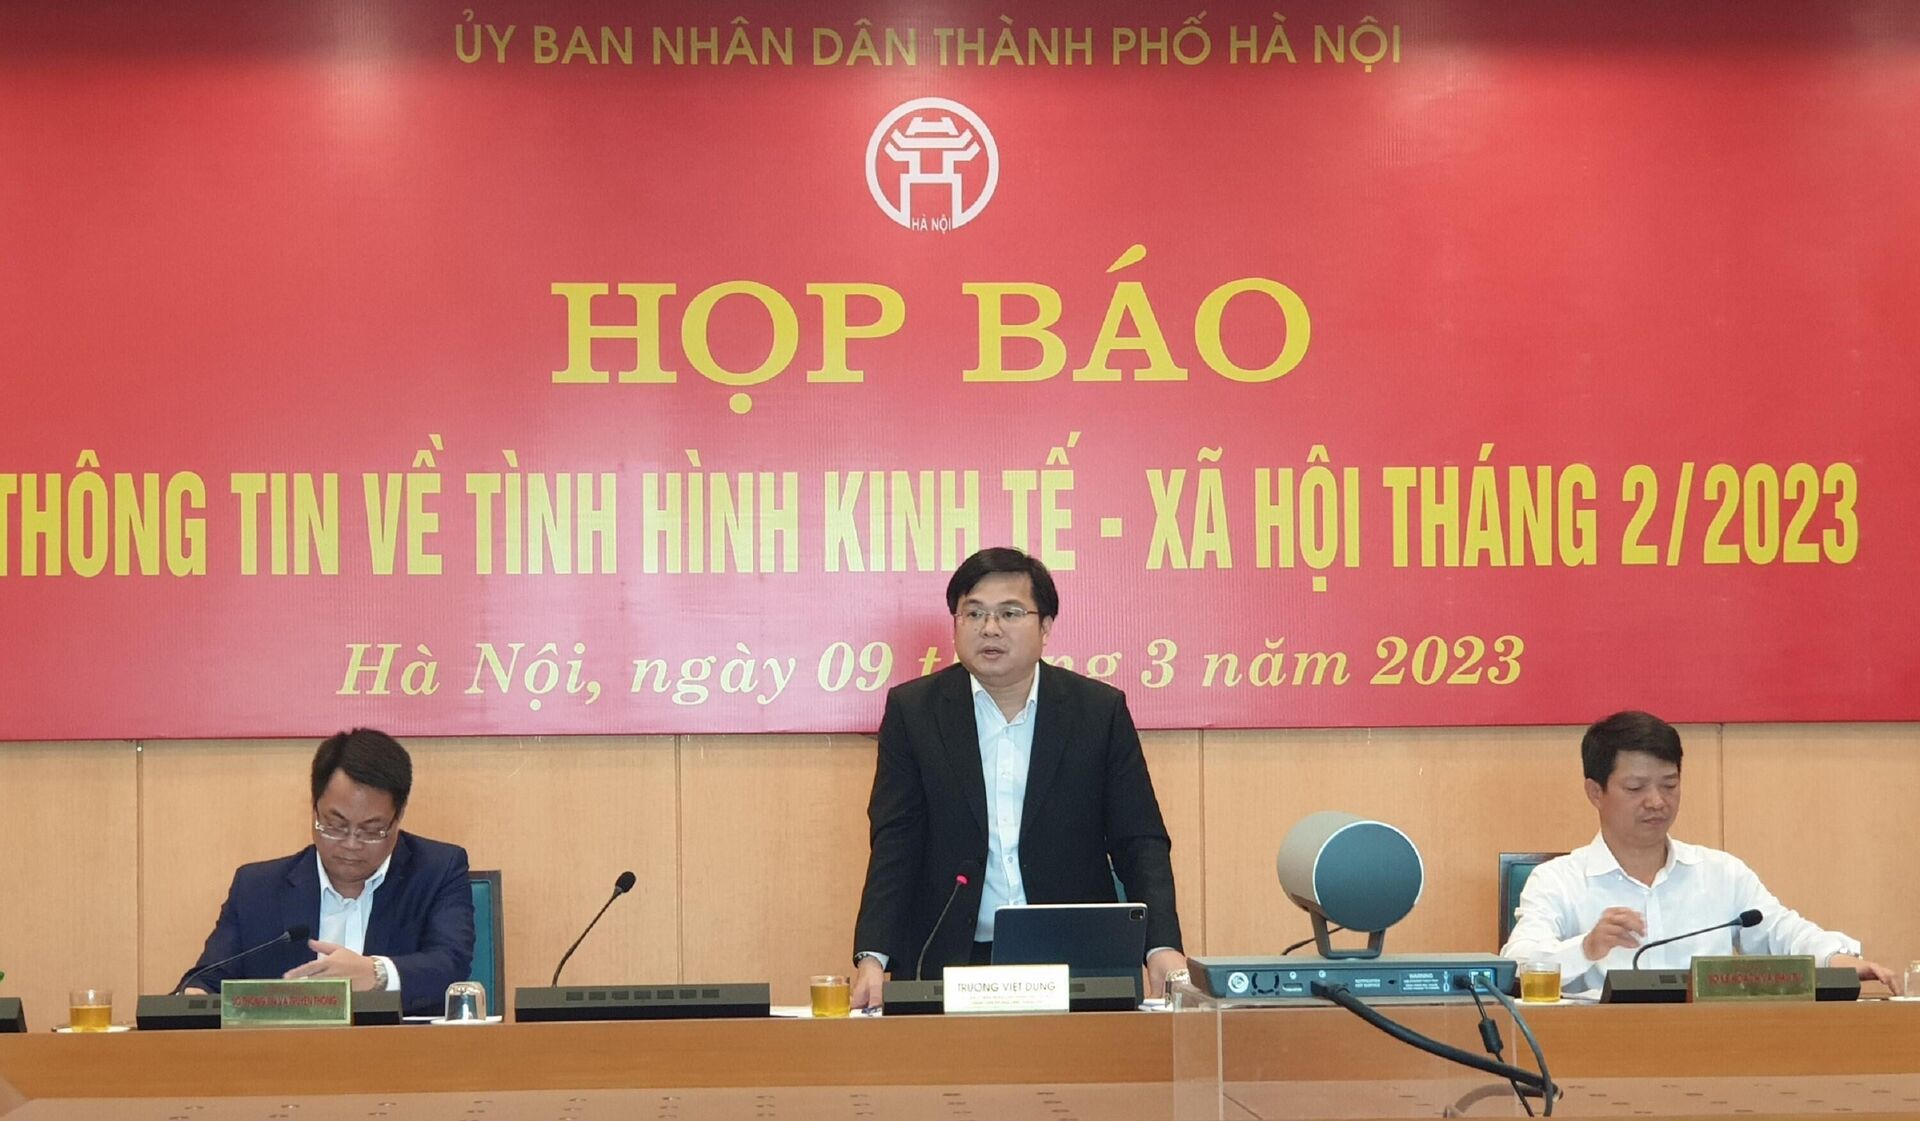 Hà Nội họp báo về tình hình kinh tế - xã hội tháng 2/2023 - Sputnik Việt Nam, 1920, 09.03.2023